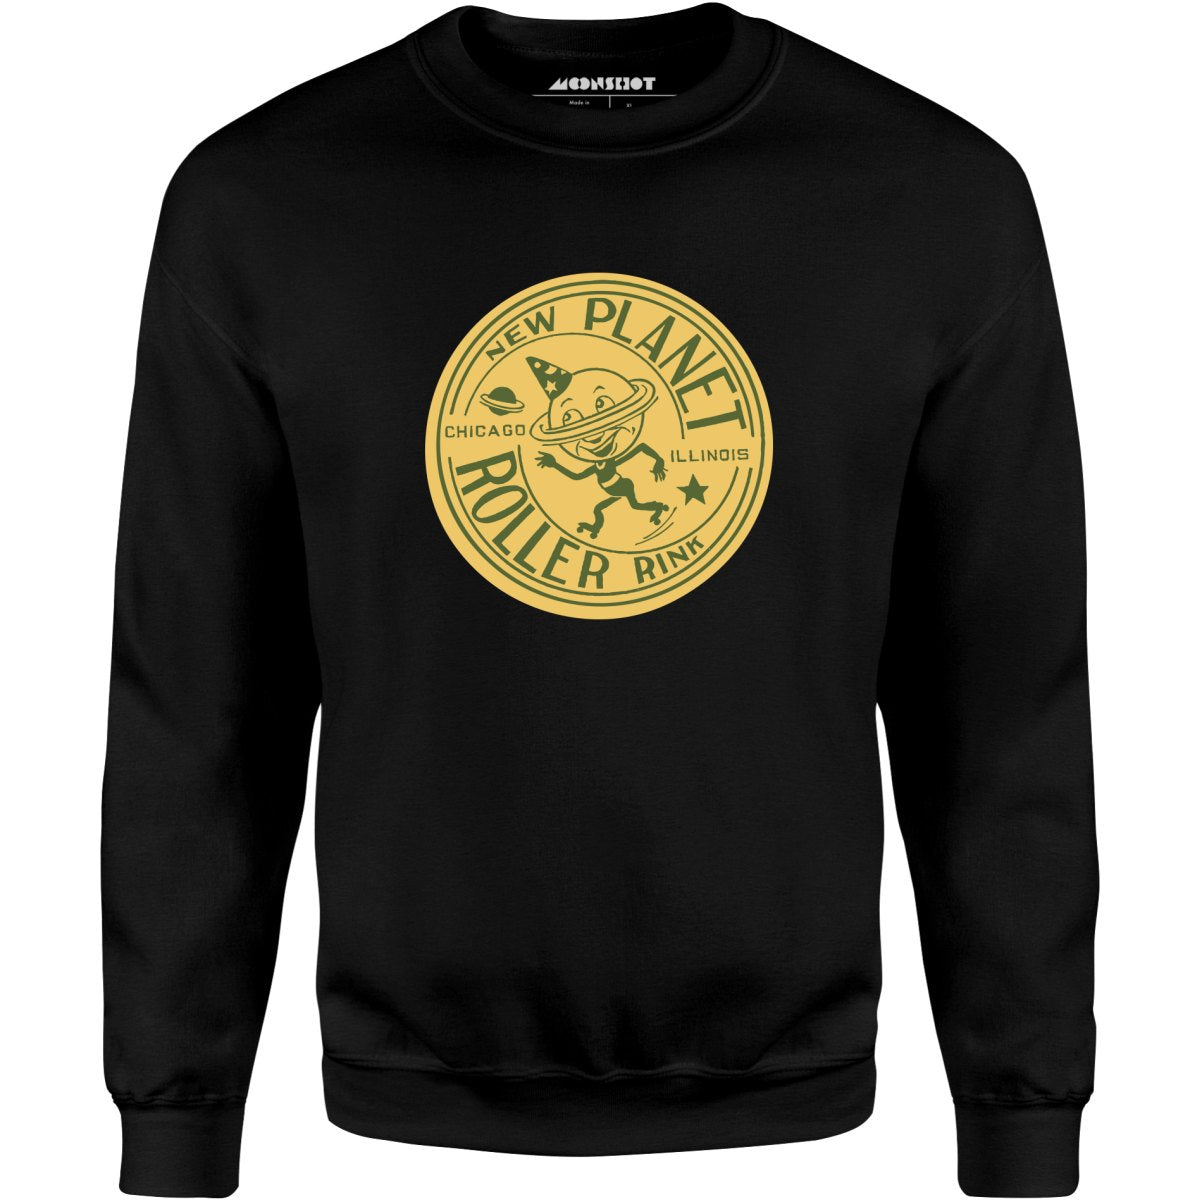 New Planet - Chicago, IL - Vintage Roller Rink - Unisex Sweatshirt